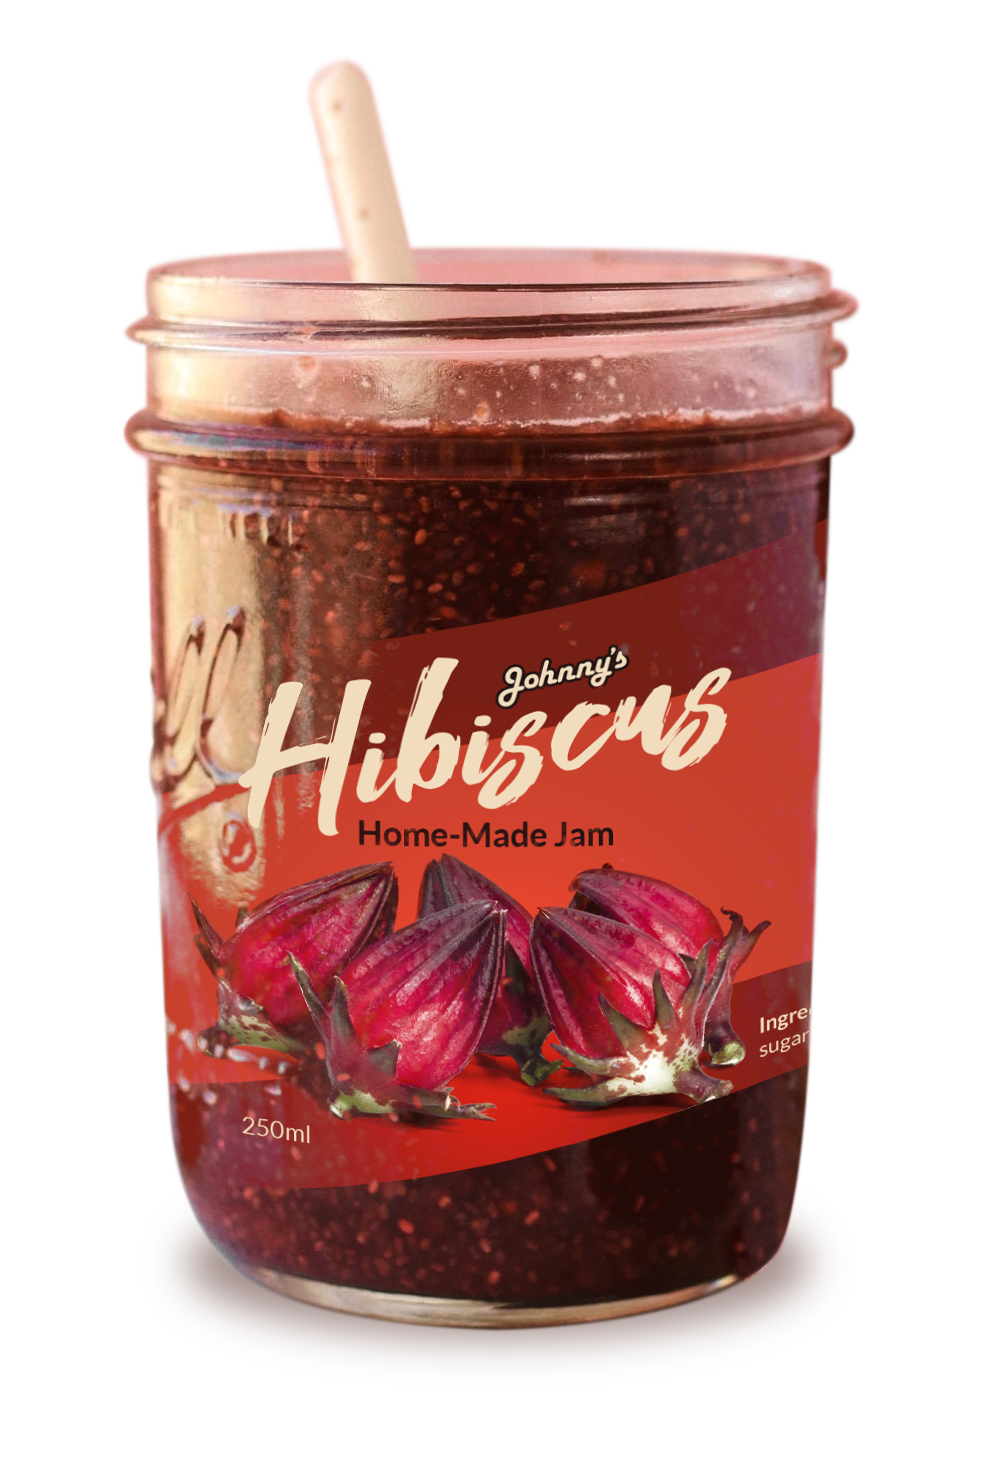 hibiscus jam